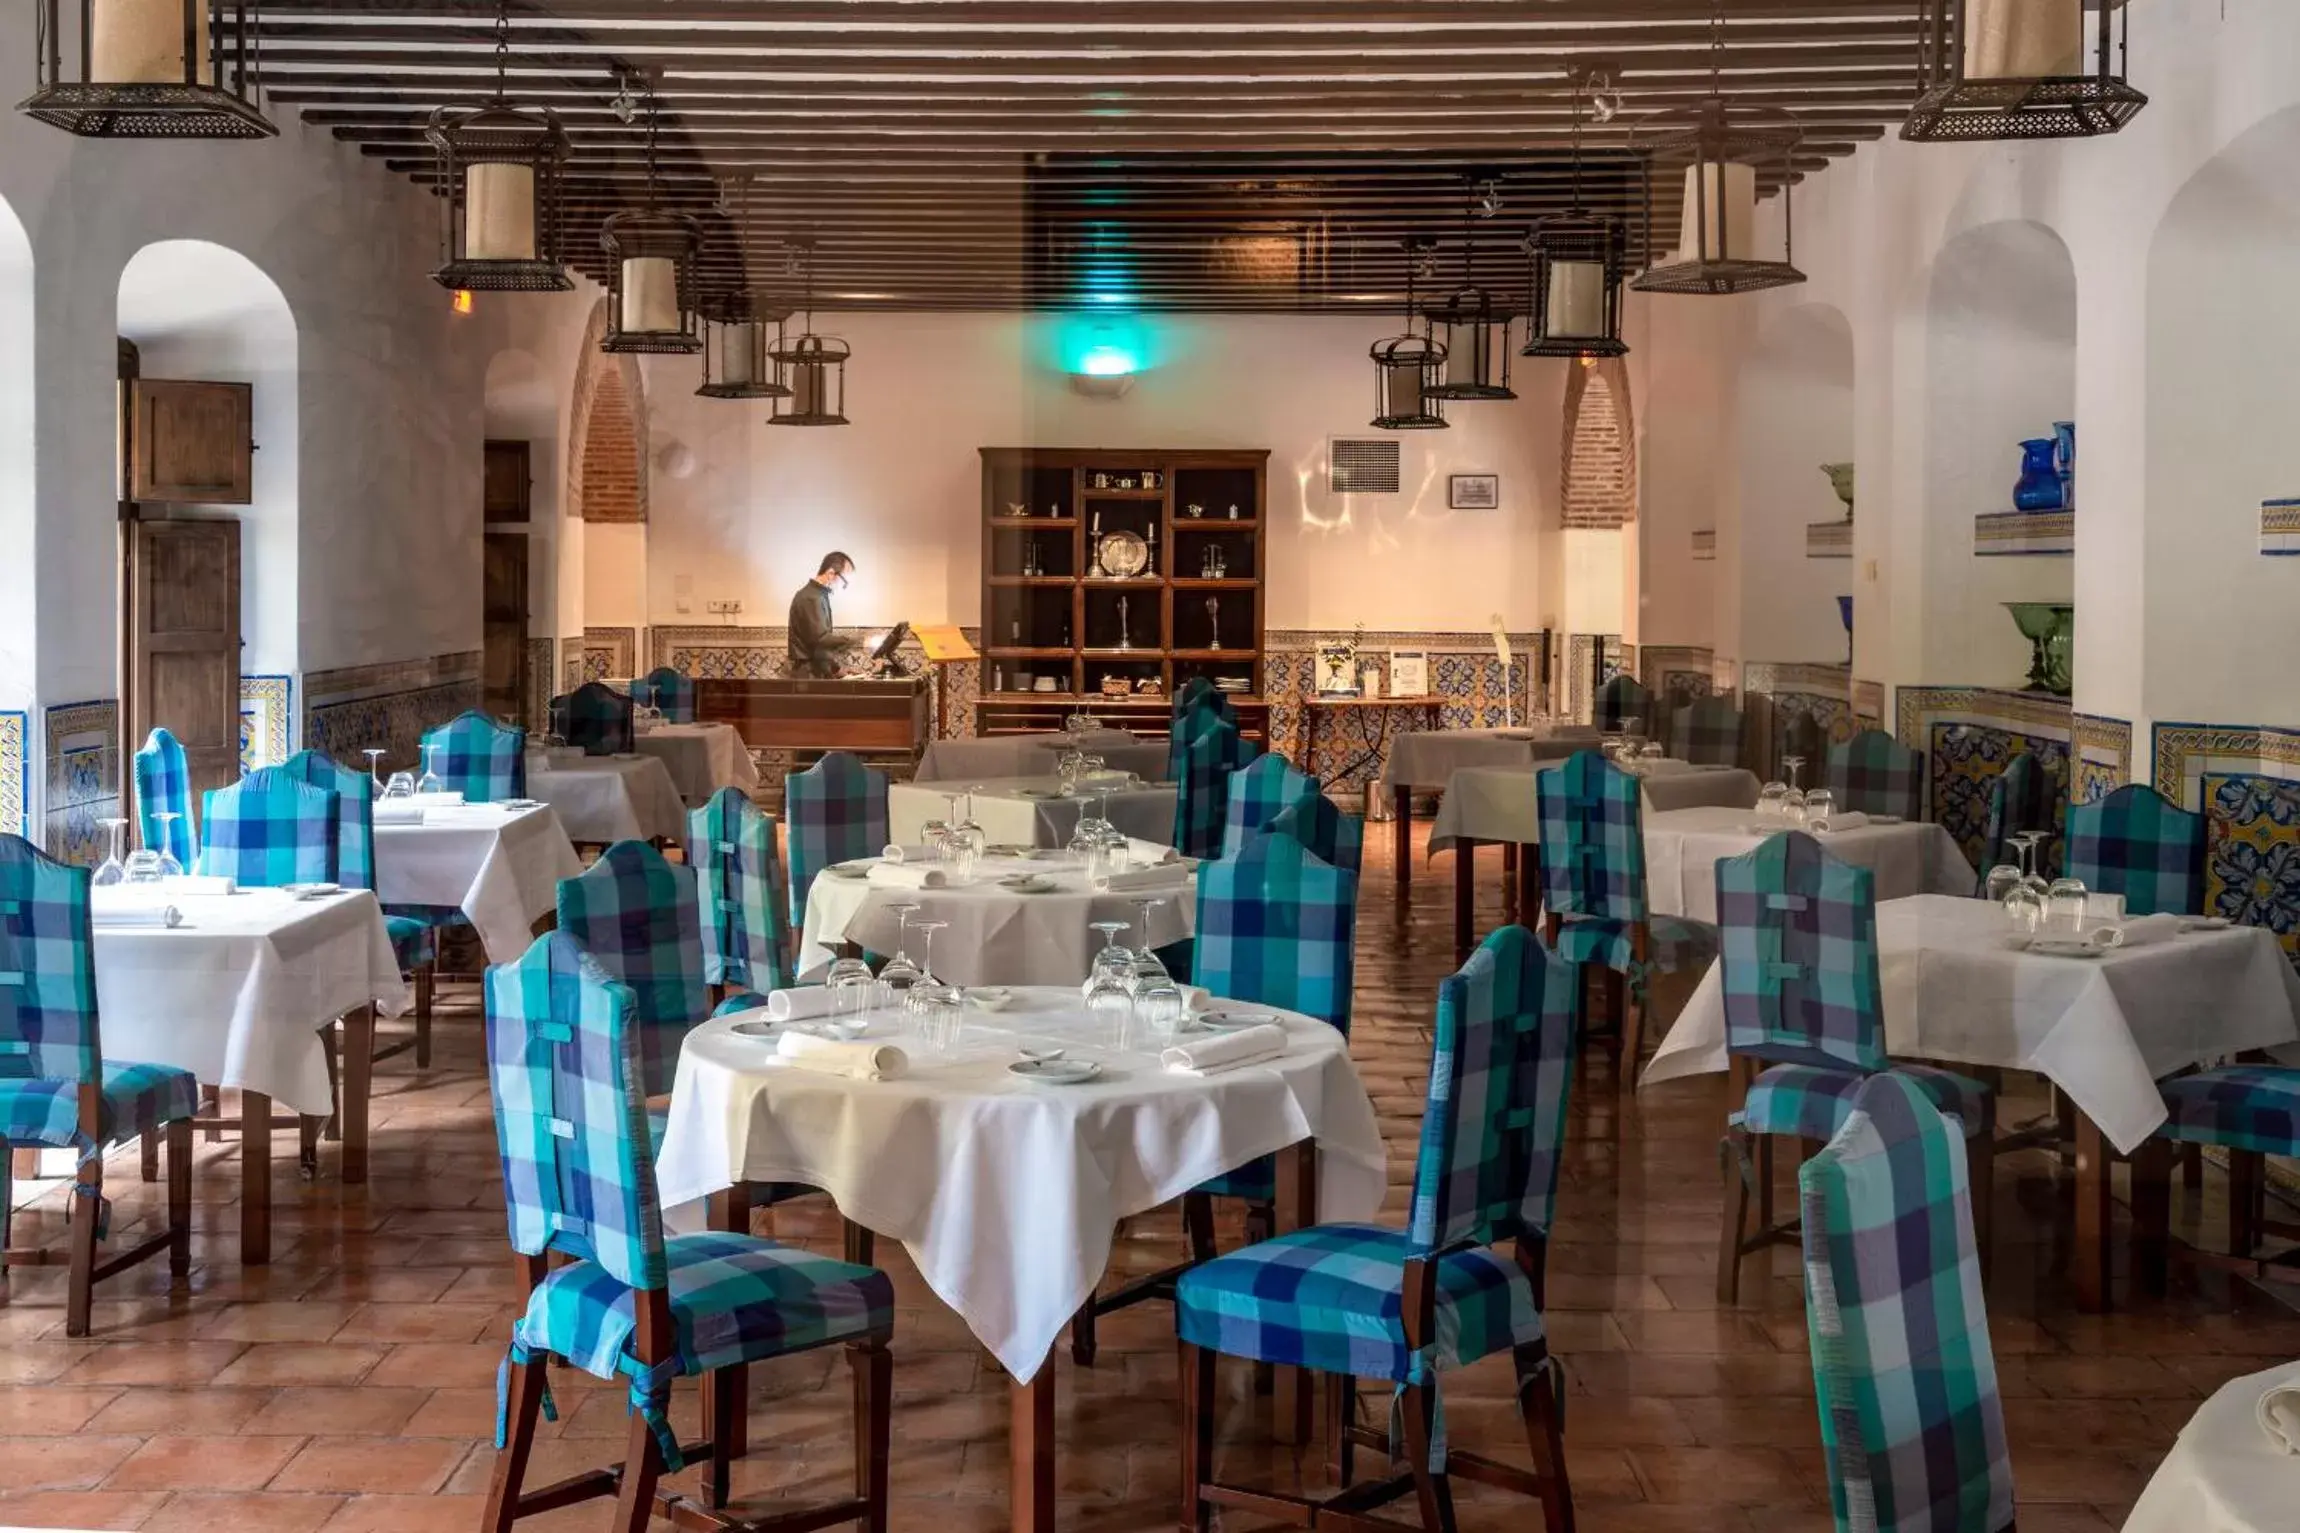 Restaurant/Places to Eat in Parador de Chinchón